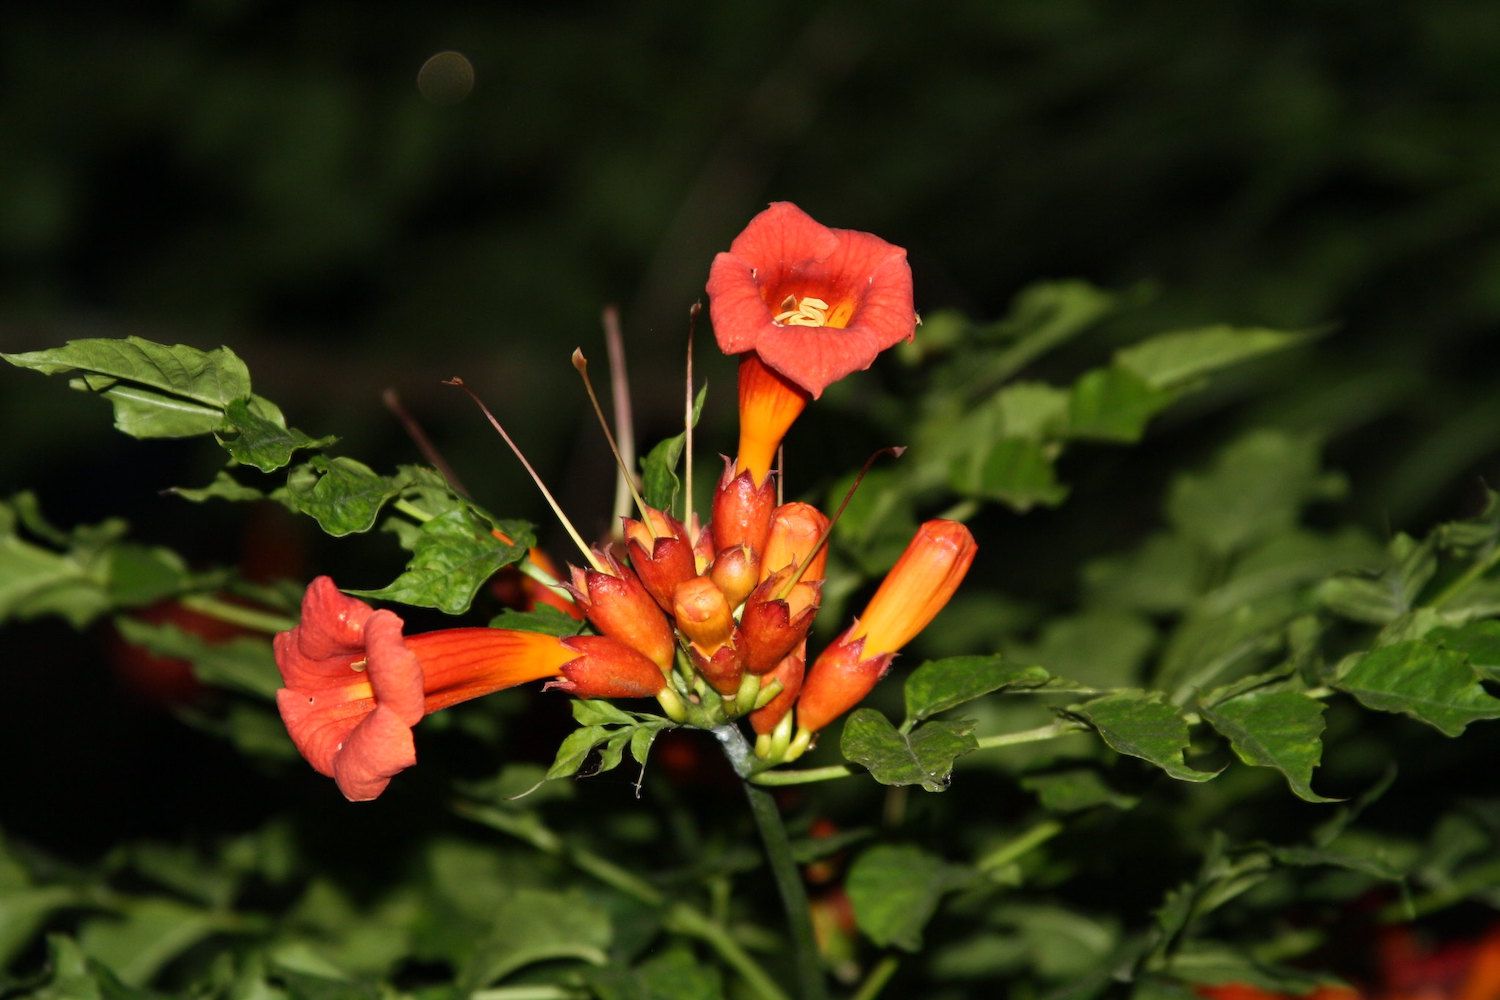 有凹槽的喇叭形蔓藤花展示了它们橘红色的颜色